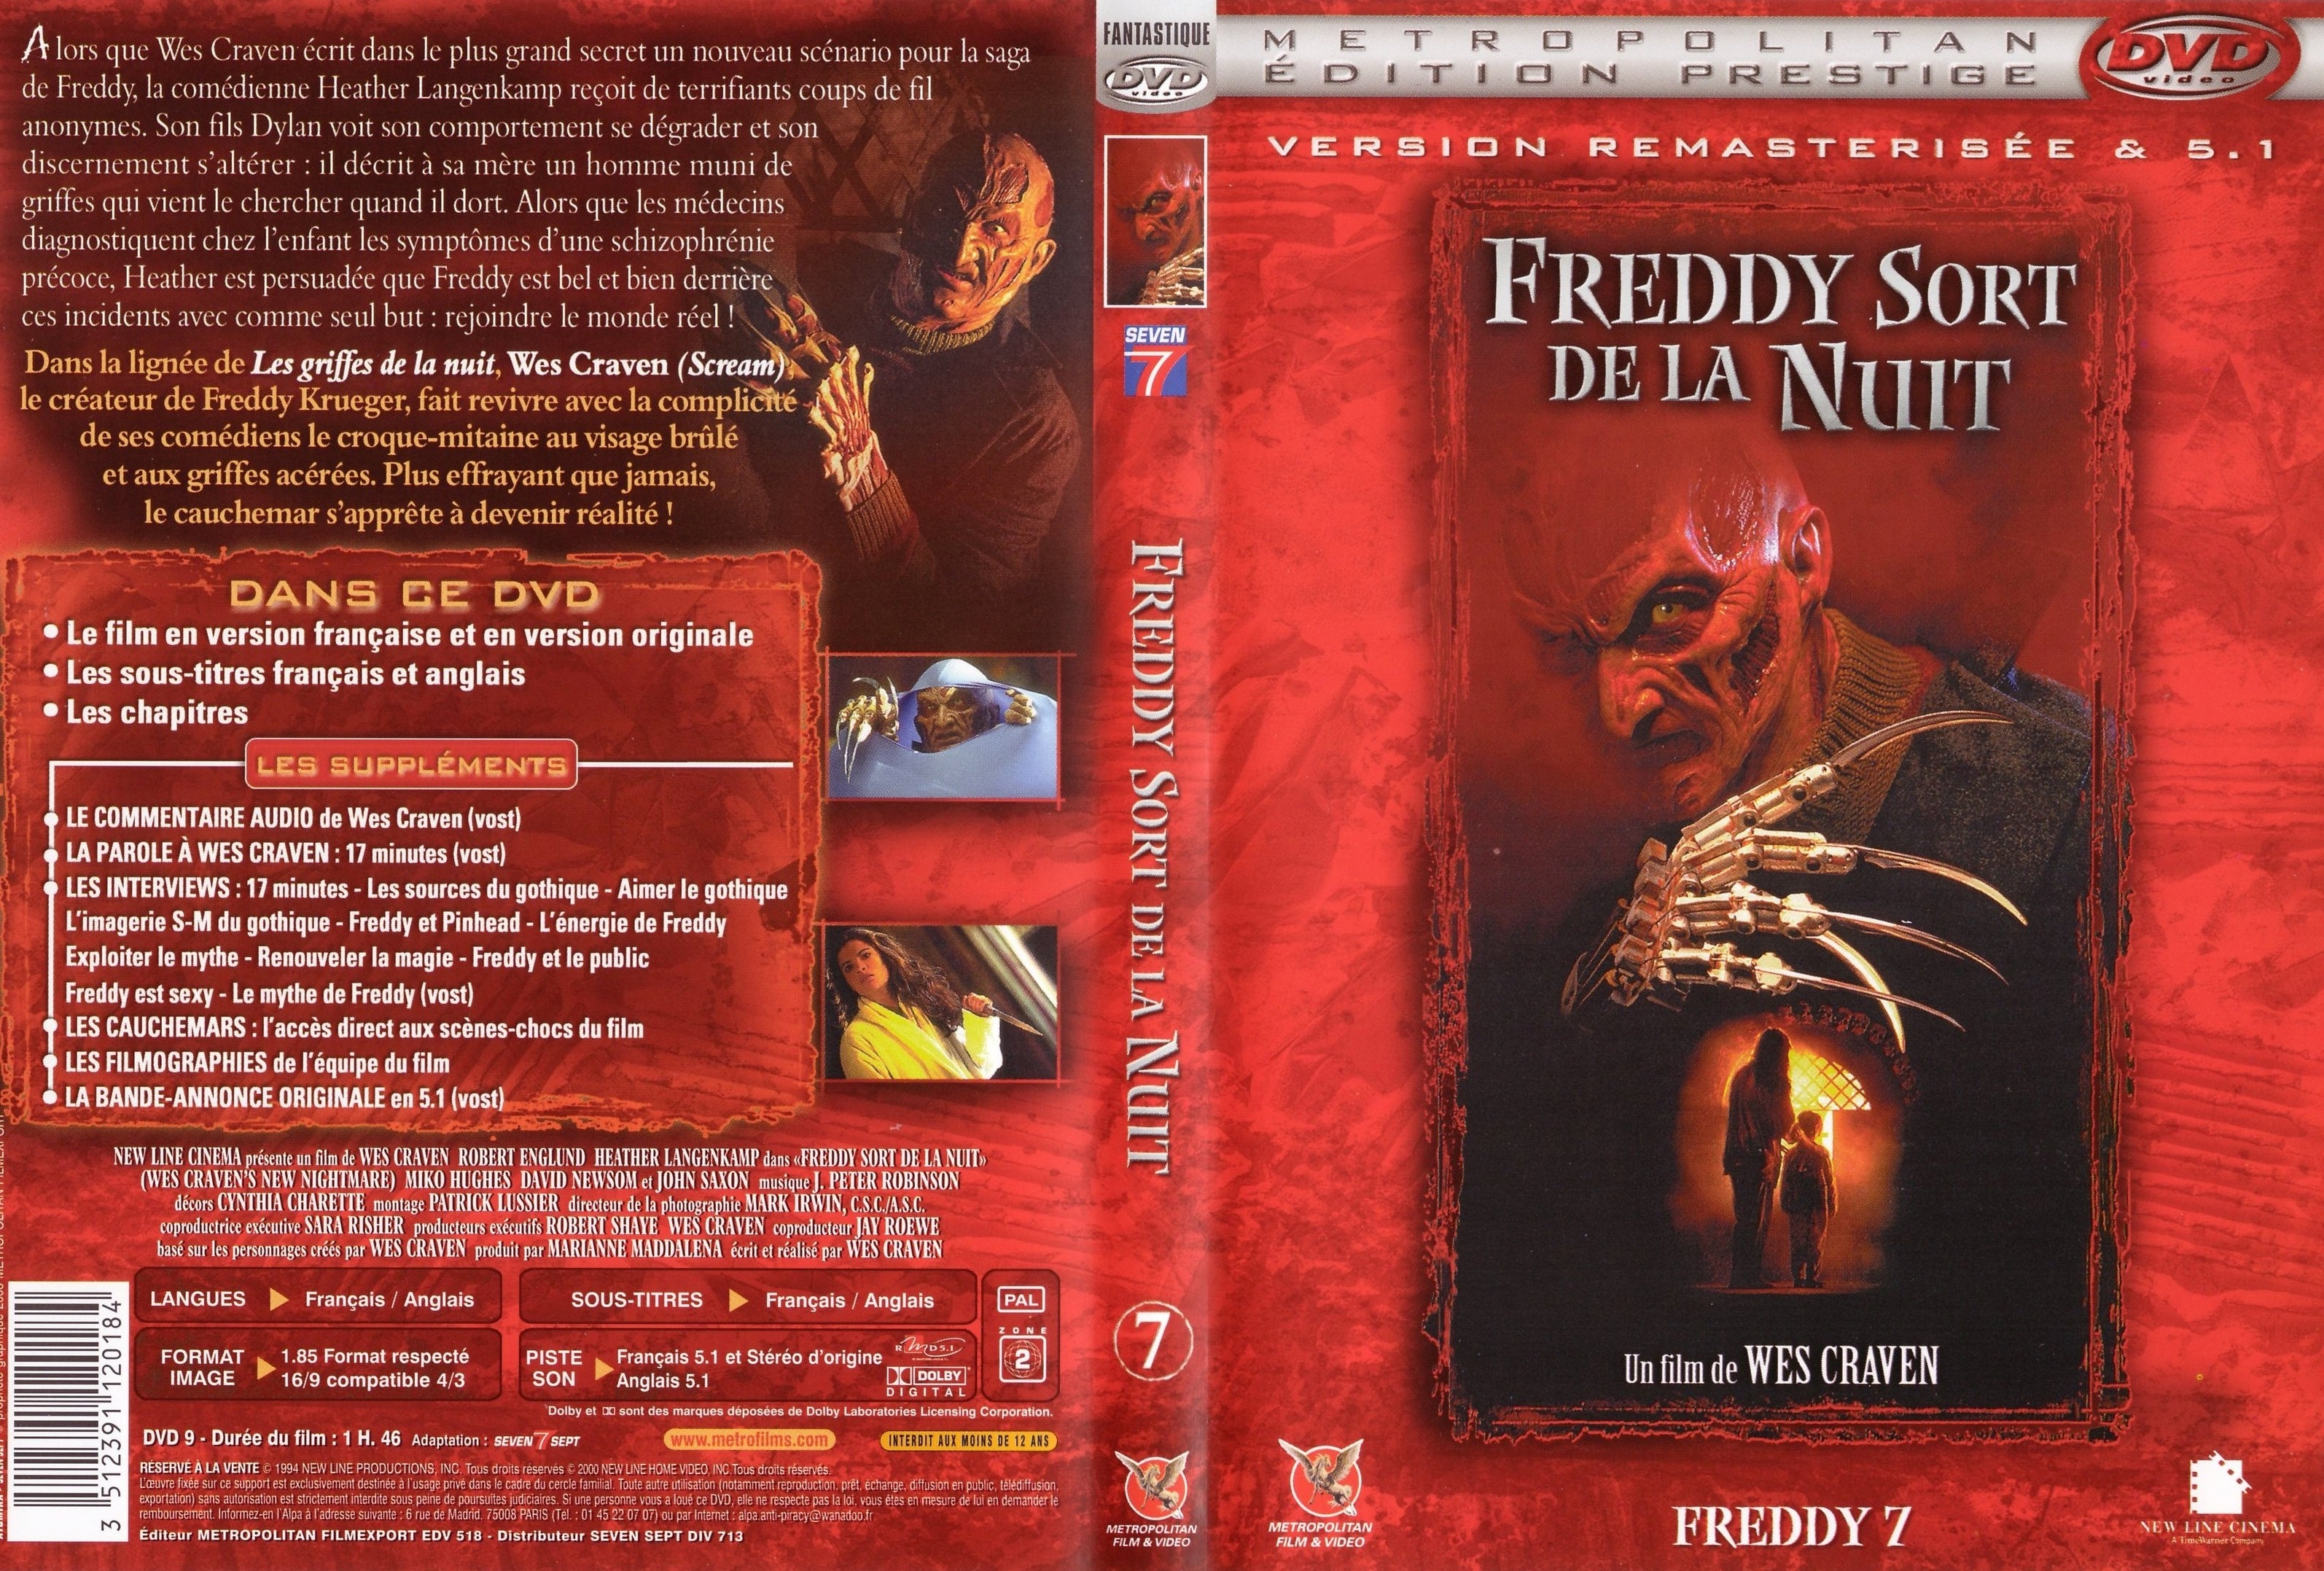 Jaquette DVD Freddy 7 sort de la nuit